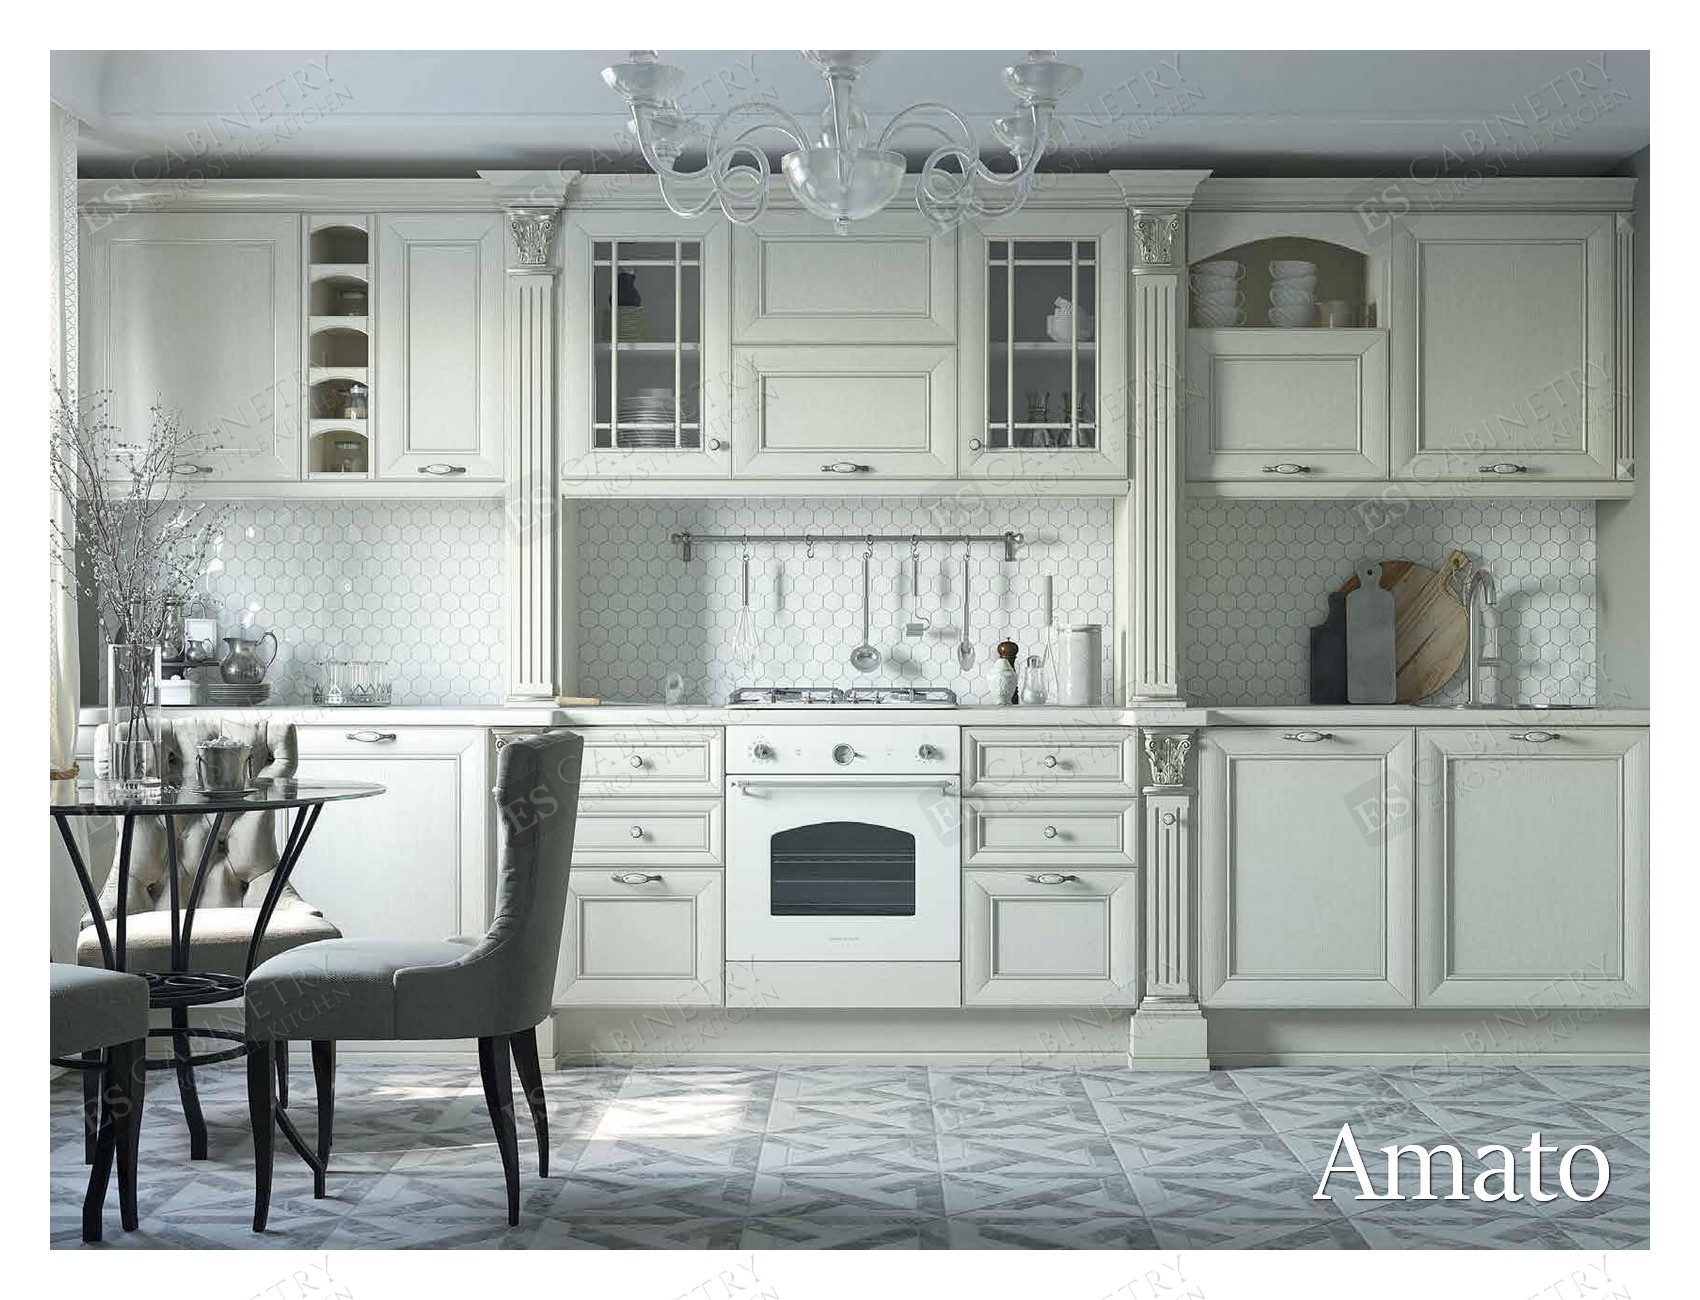 Amato | Modern European kitchen designs